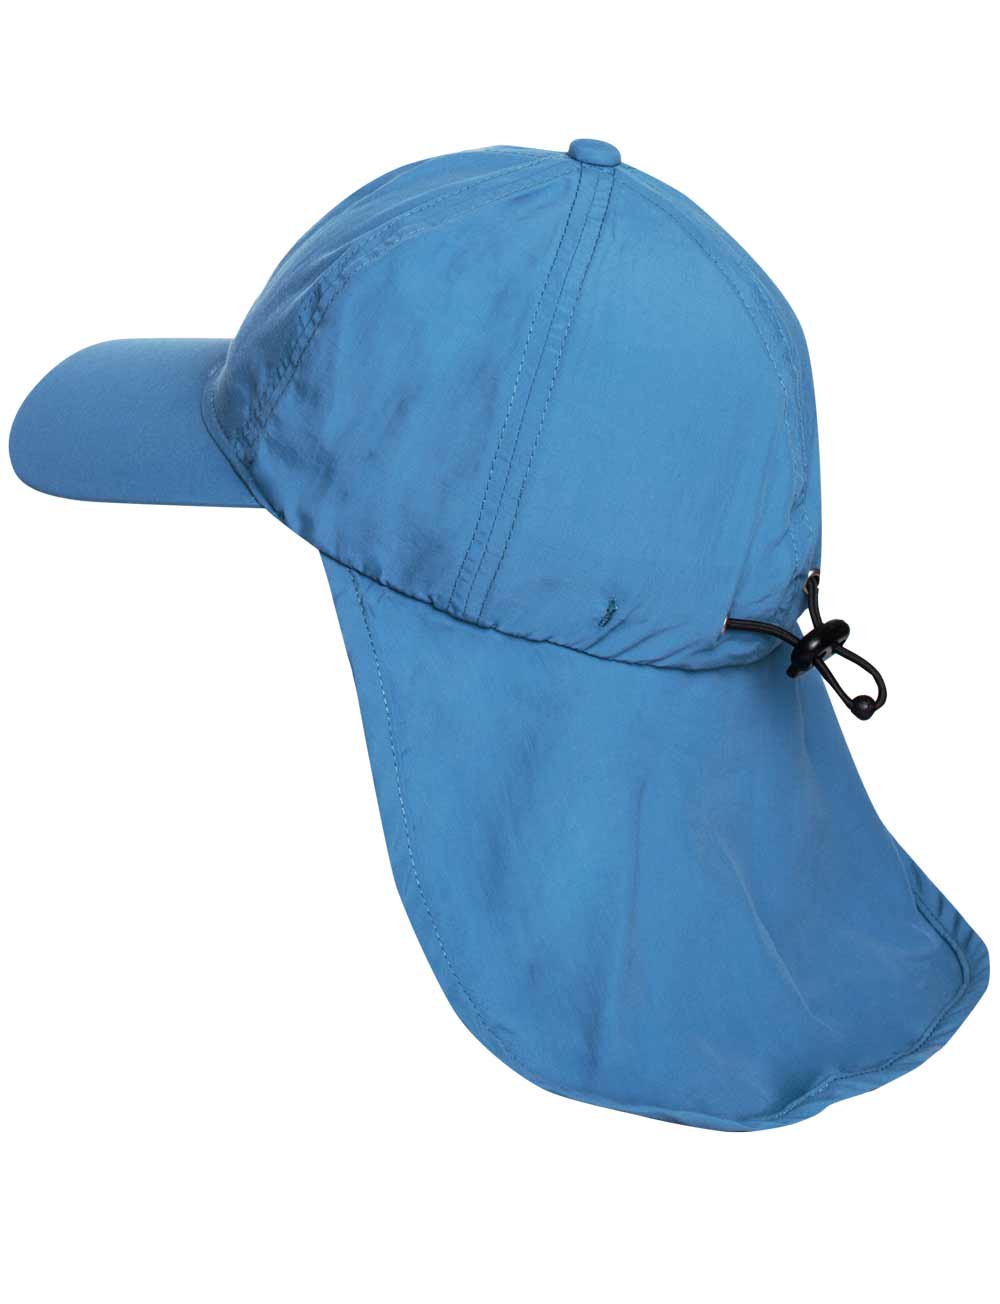 Schutz Cap Jolly mit Nackenschutz Kinder recycelt blau side back